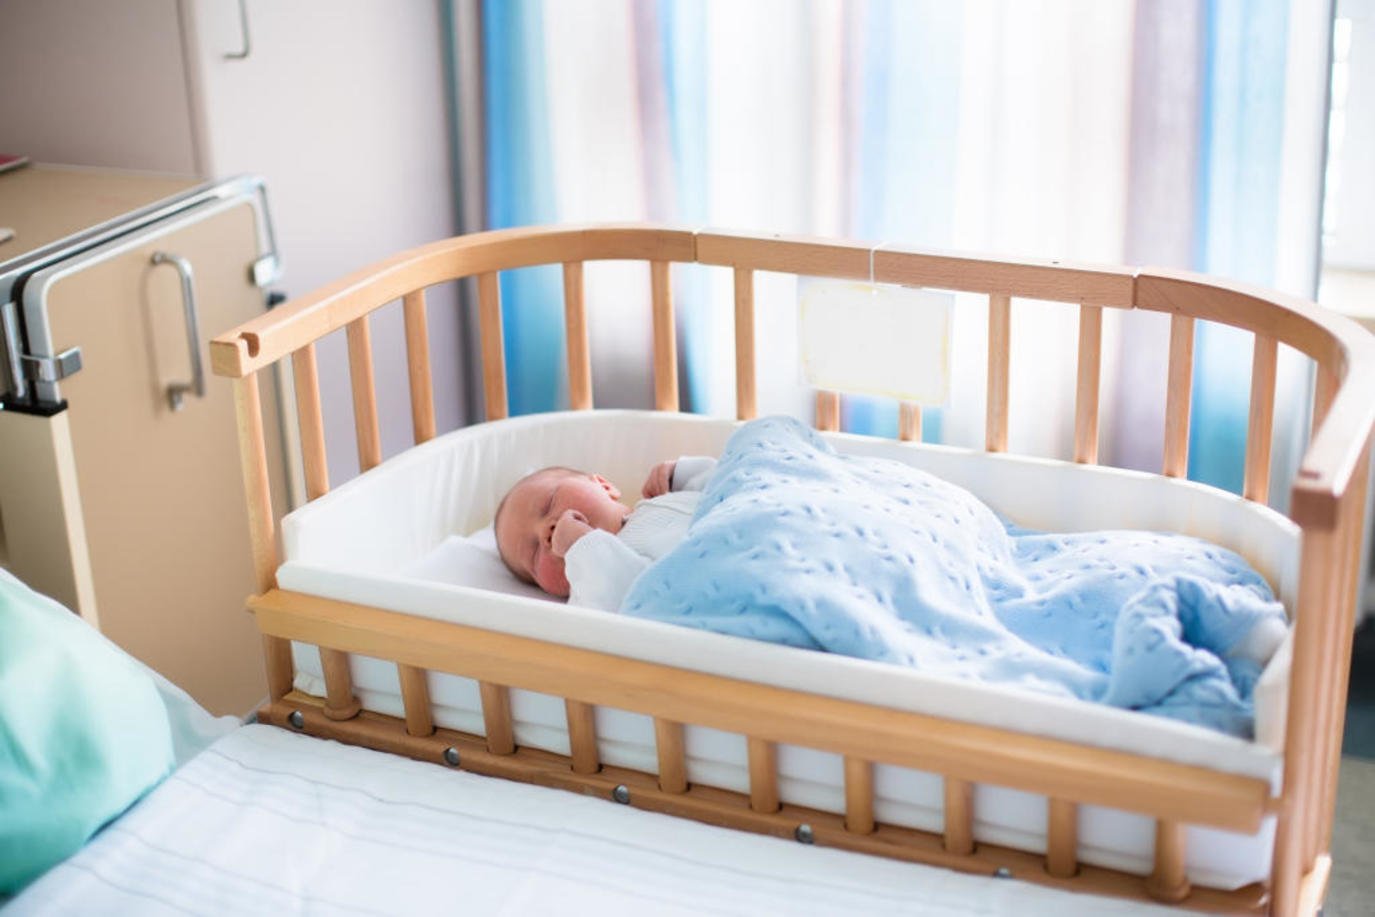 ما تفسير حلم رؤية سرير الطفل في المنام لابن سيرين